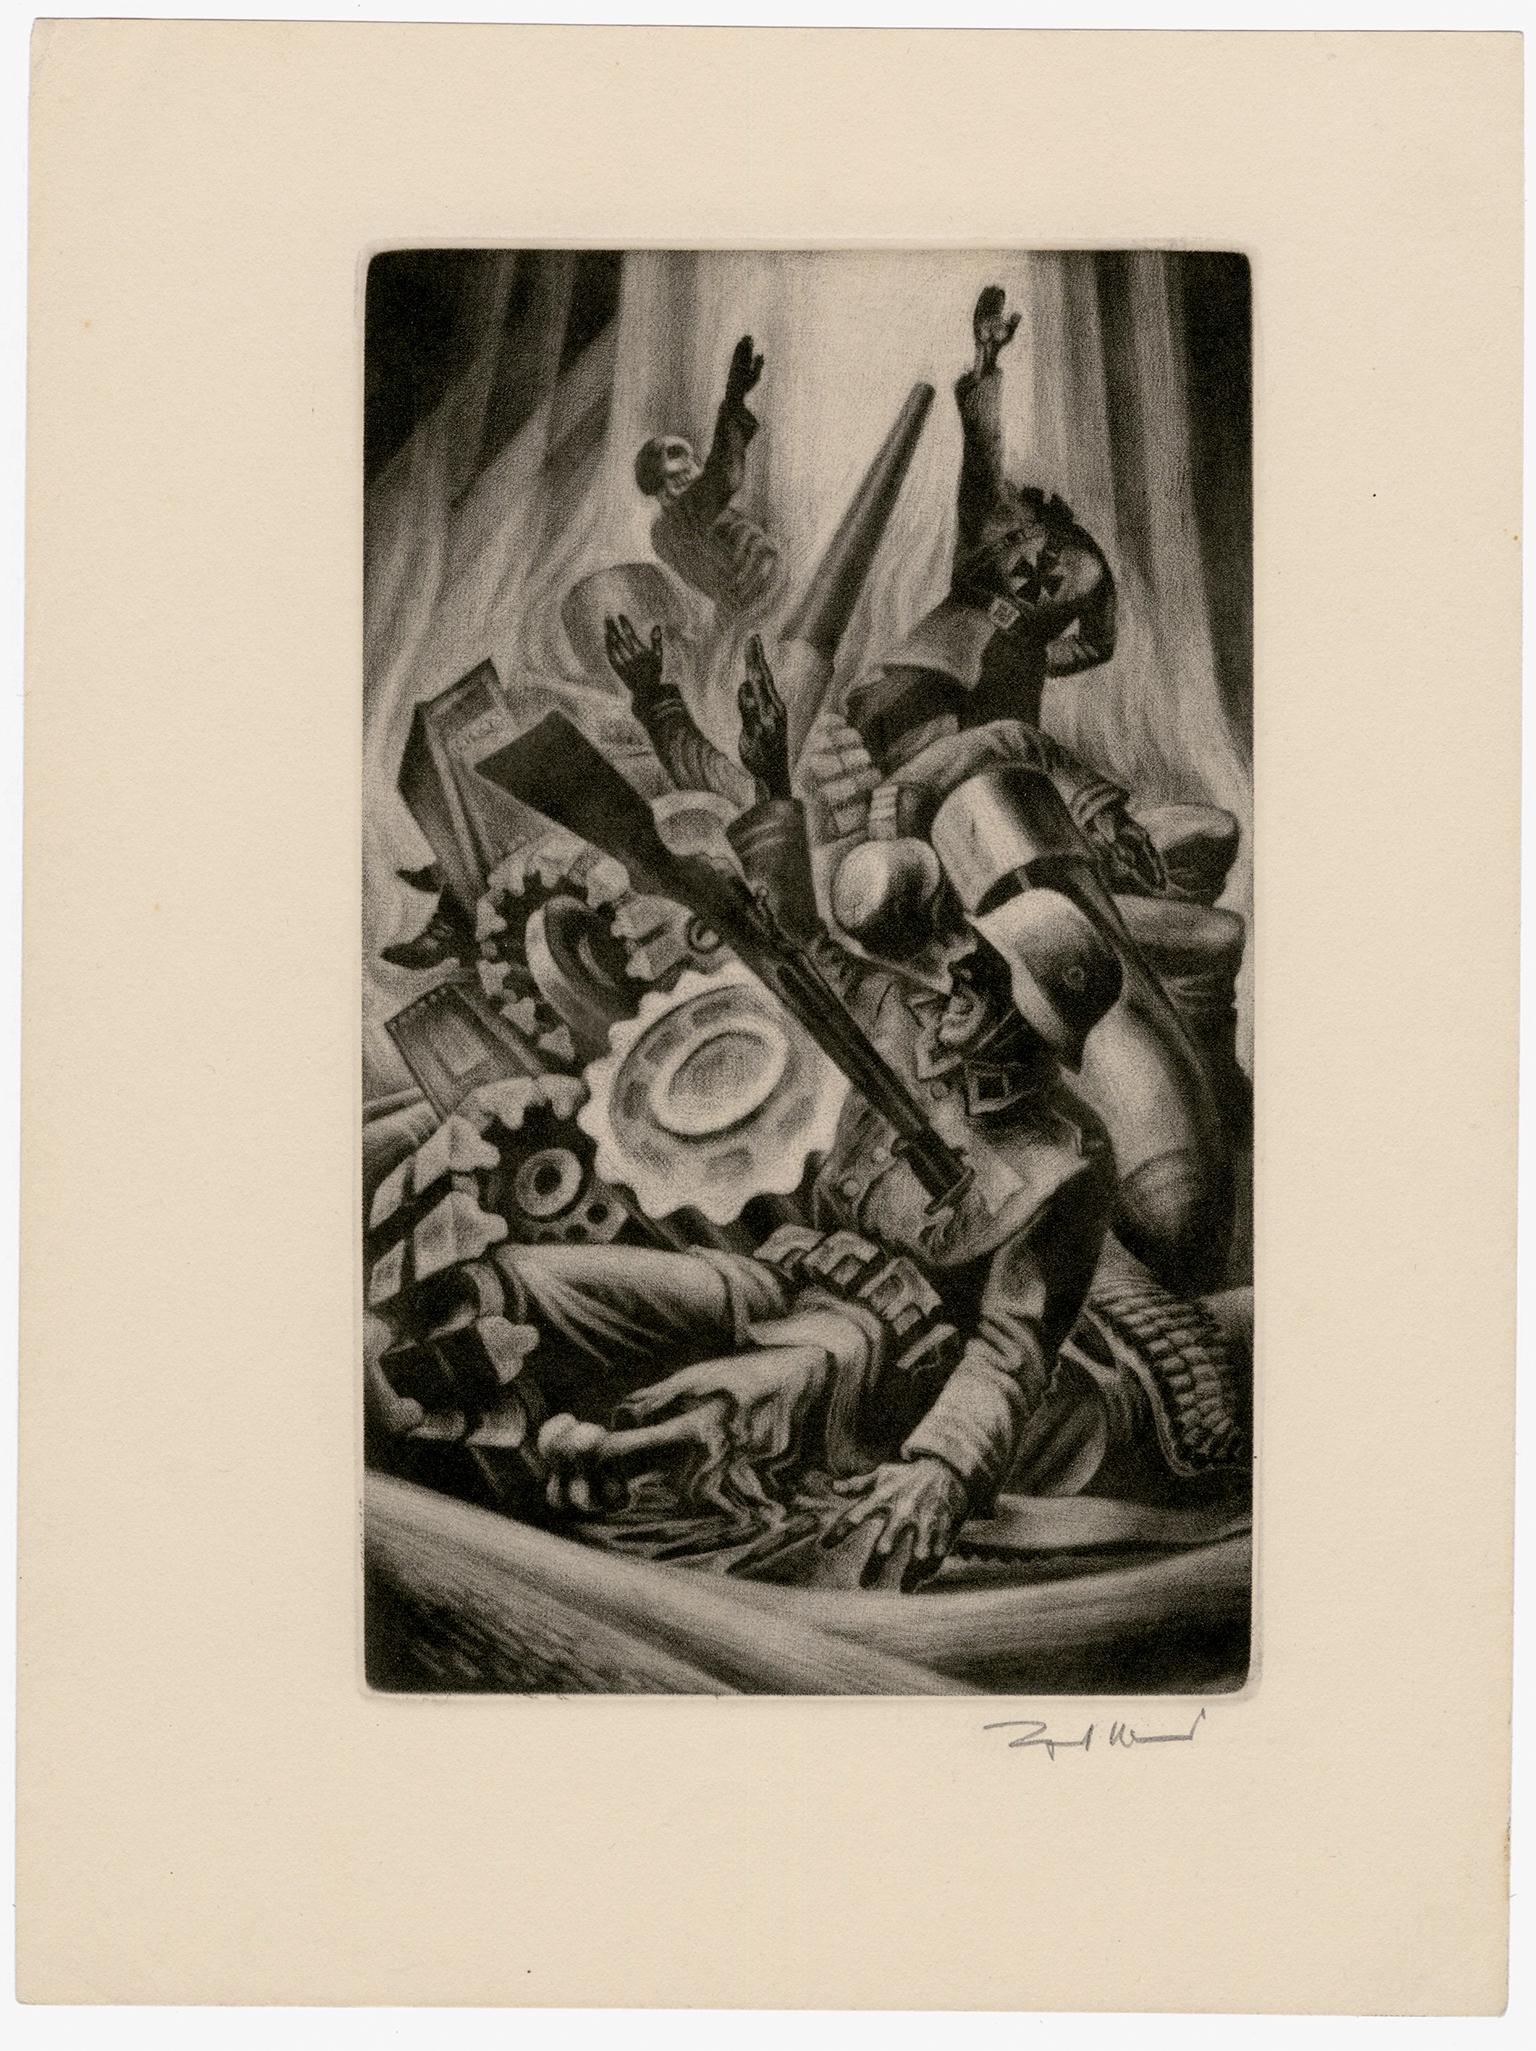 'Dogs of War' aus 'In Praise of Folly' - Grafische Moderne der 1940er Jahre – Print von Lynd Ward